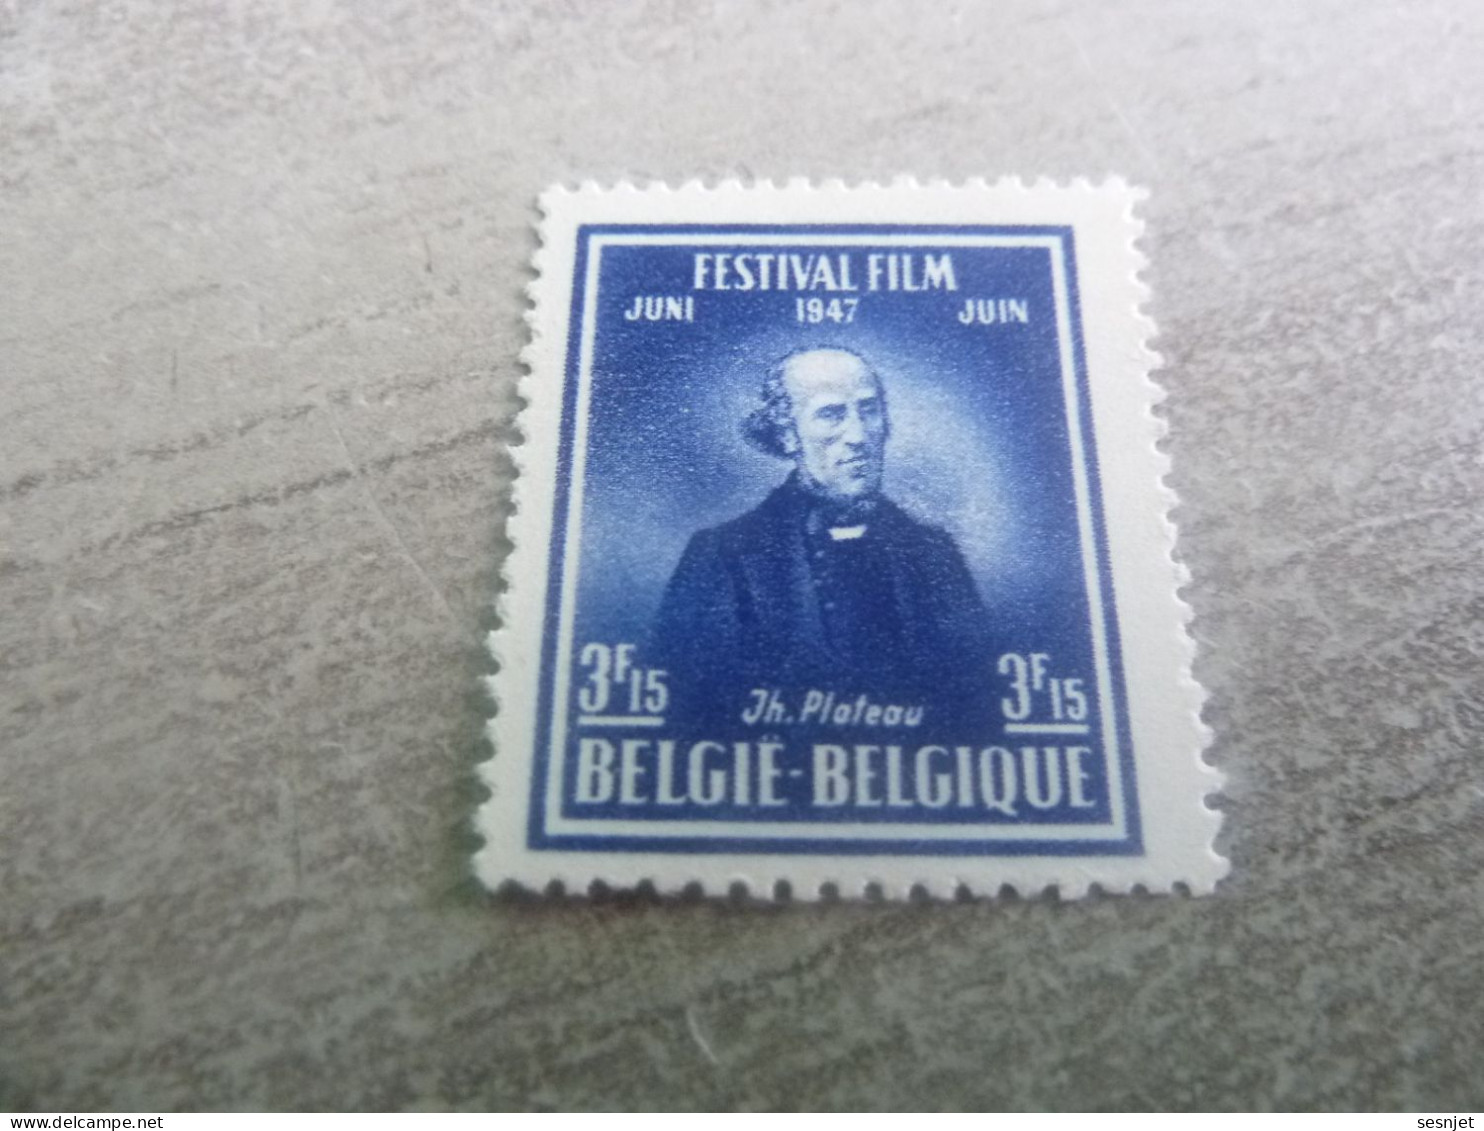 Belgique - Festival Film Juin 1947 - Gand - Val 3f.15 - Bleu Foncé - Non Oblitéré - Année 1947 - - Unused Stamps